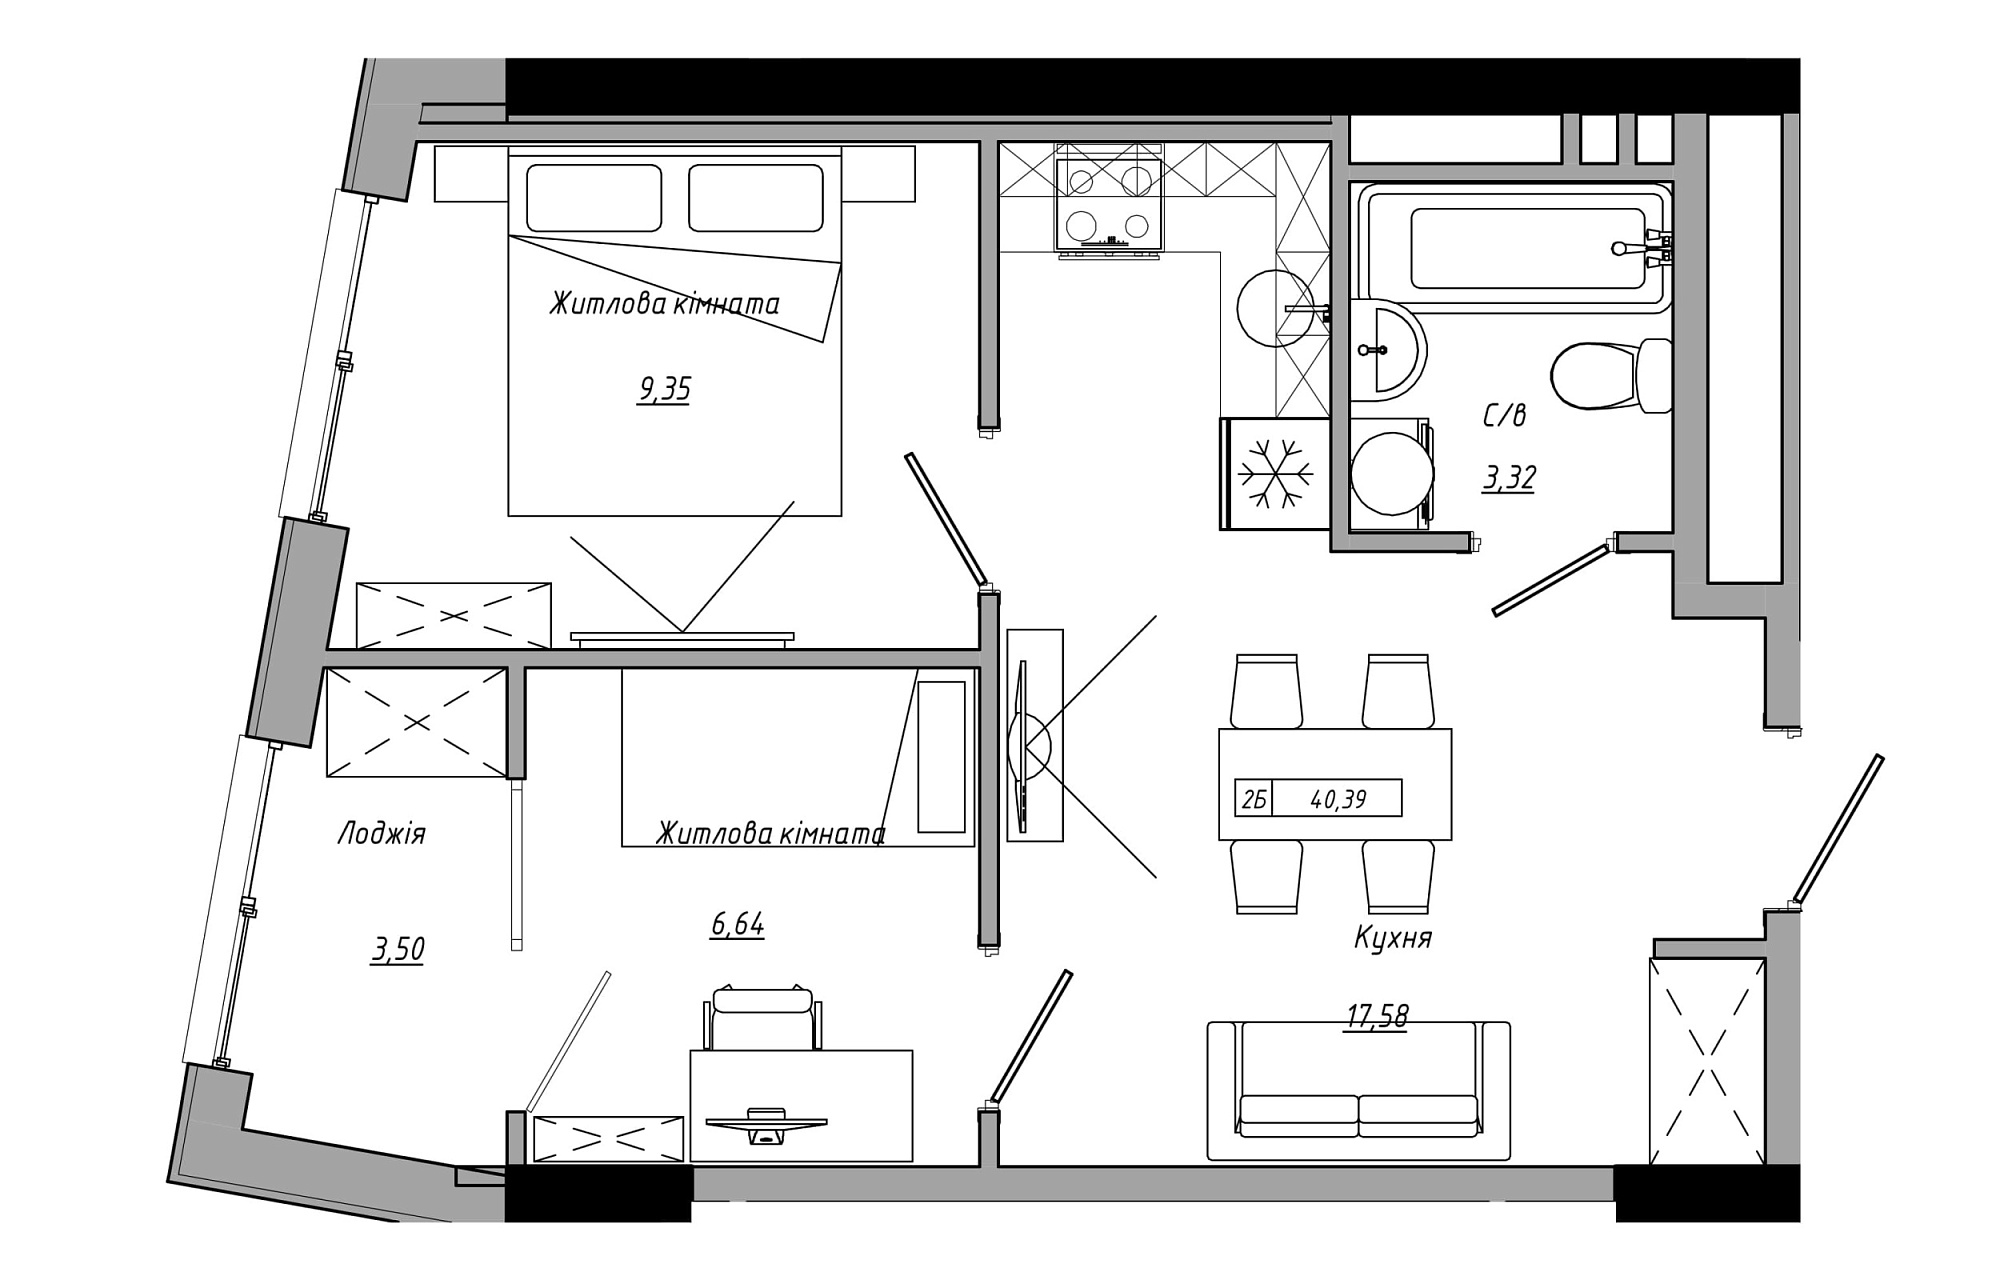 Планування 2-к квартира площею 40.39м2, AB-21-06/00007.